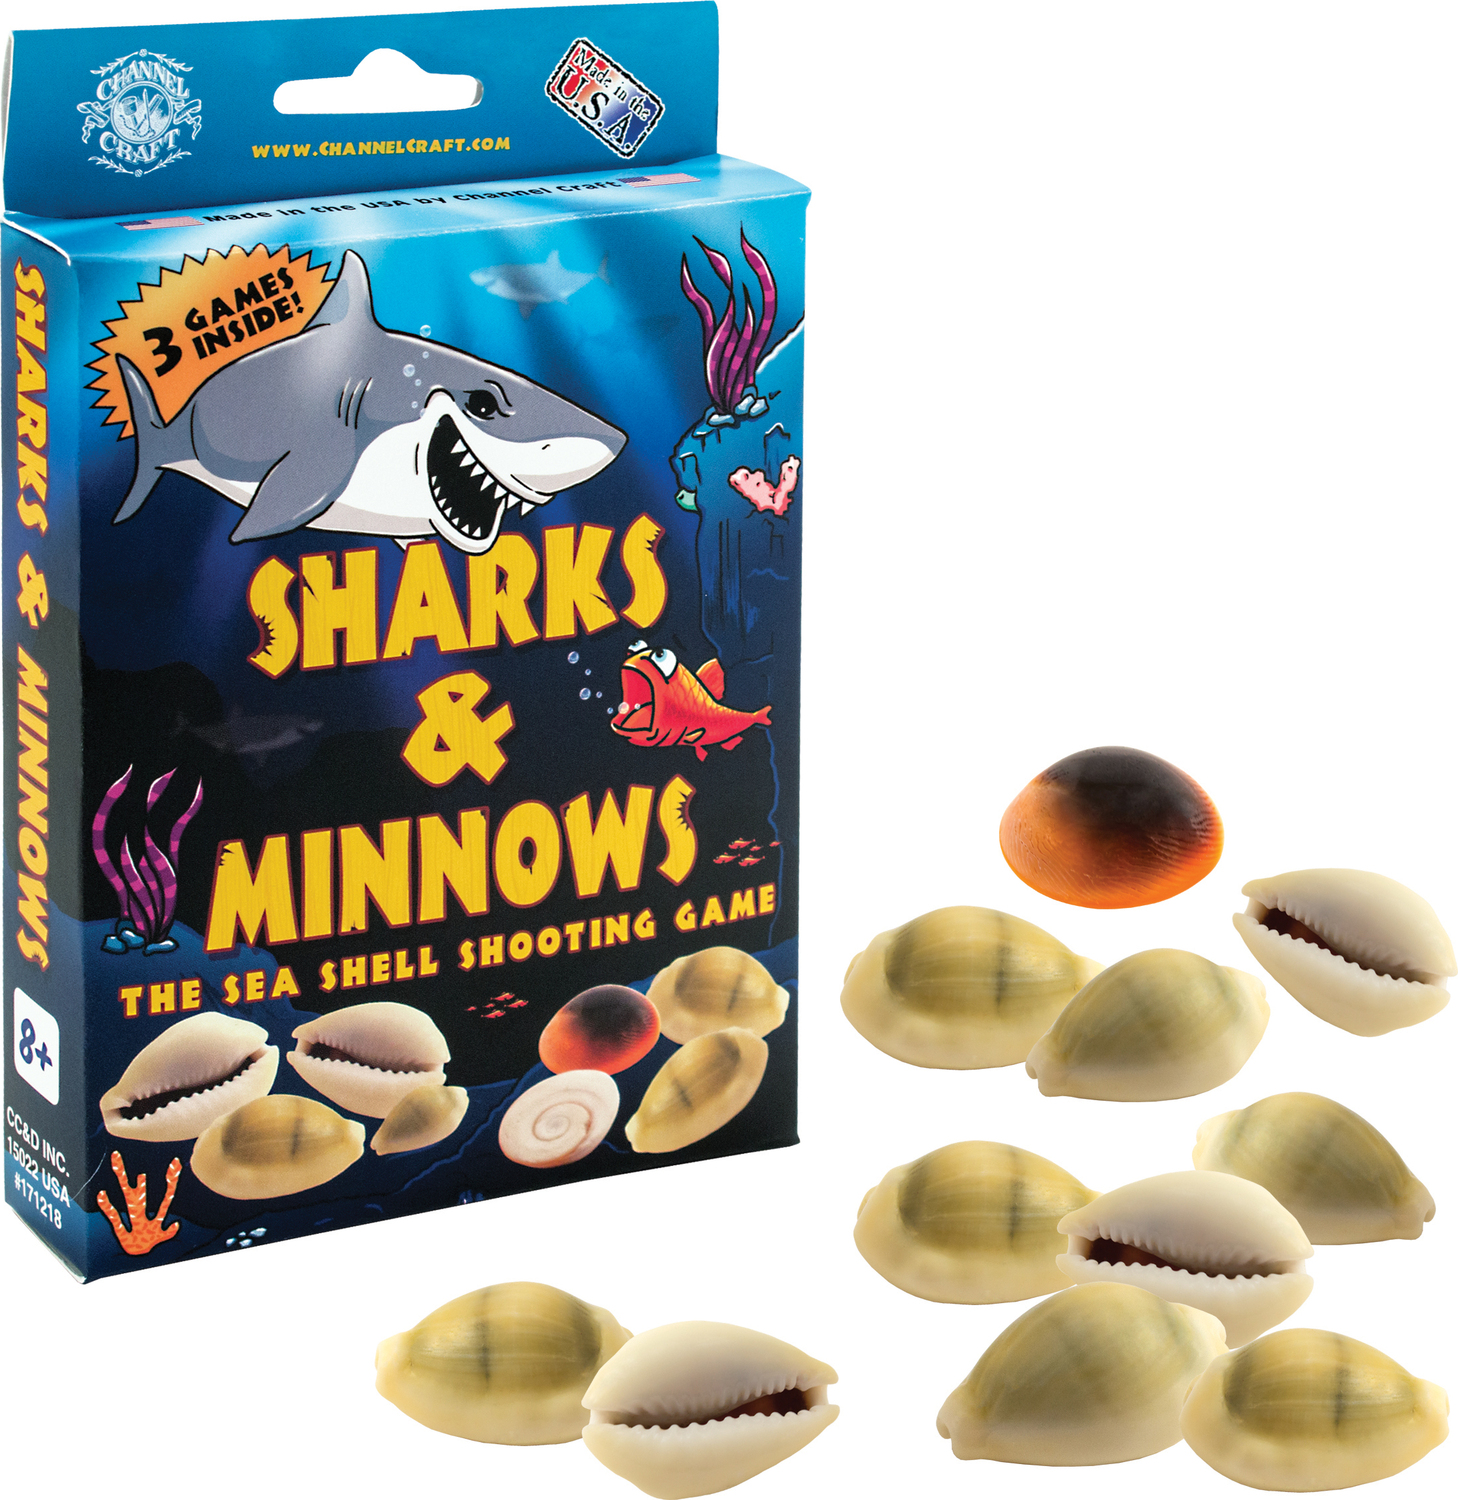 Sharks & Minnows Game - Fairhaven Toy Garden